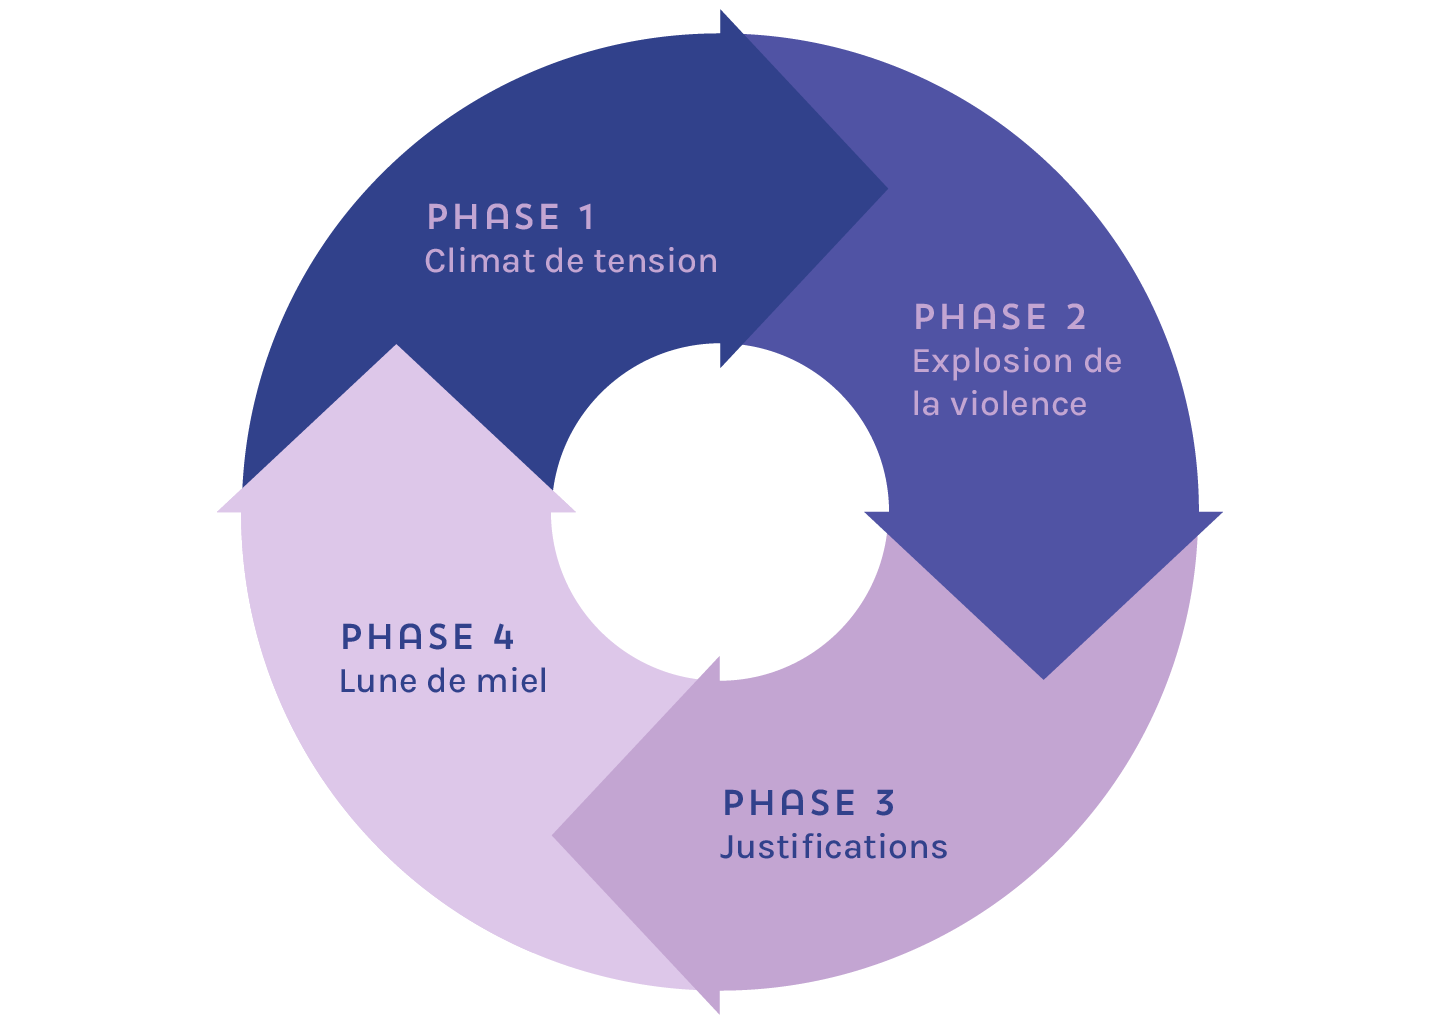 Cercle représentant le cycle de la violence grâce à quatre flèches représentant chacune une phase: phase 1 climat de tension, phase 2 explosion de la violence, phase 3 justifications, phase 4 lune de miel.